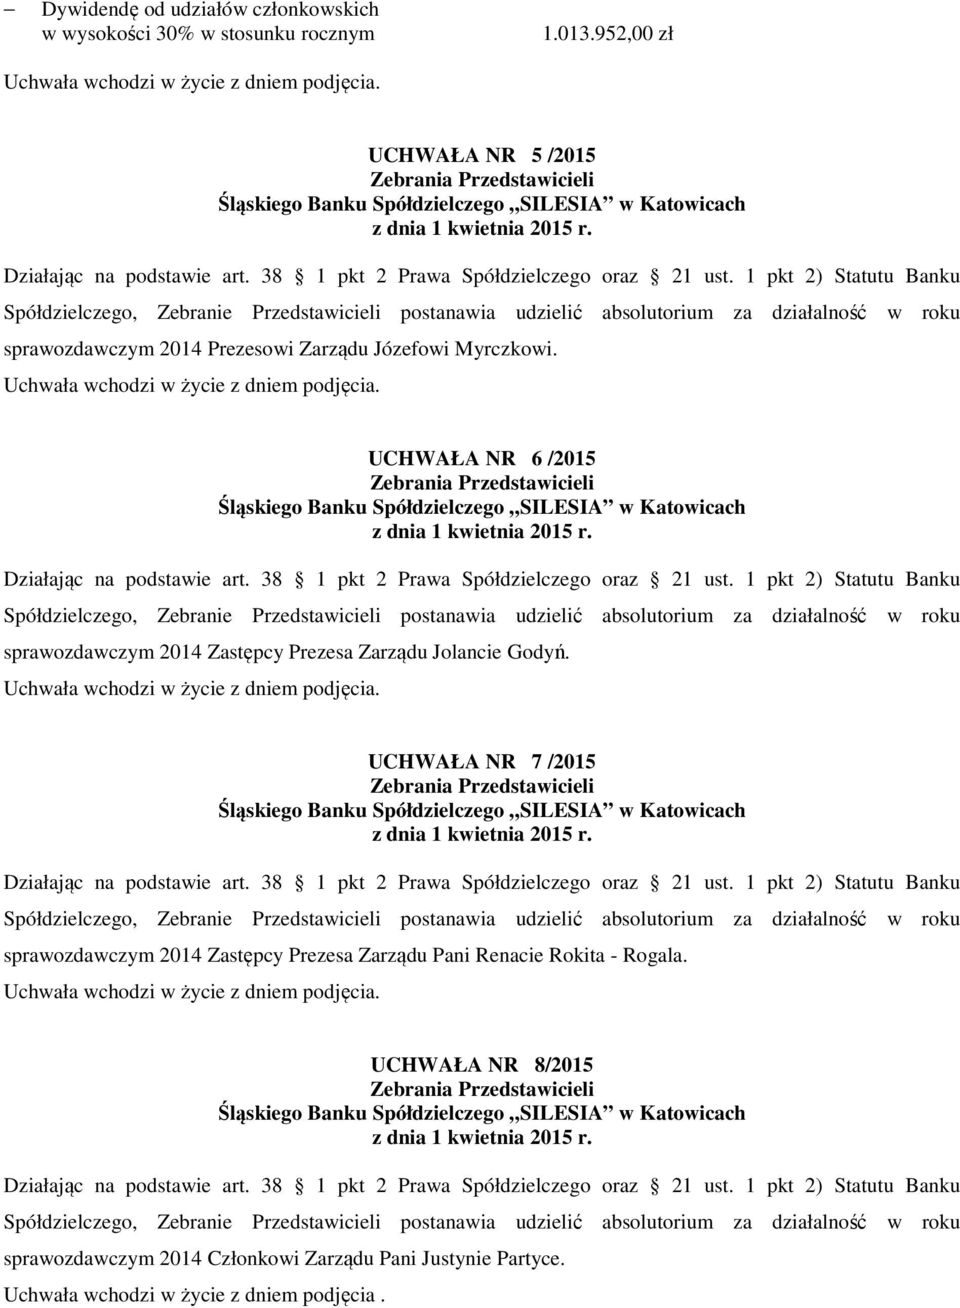 UCHWAŁA NR 6 /2015 sprawozdawczym 2014 Zastępcy Prezesa Zarządu Jolancie Godyń.